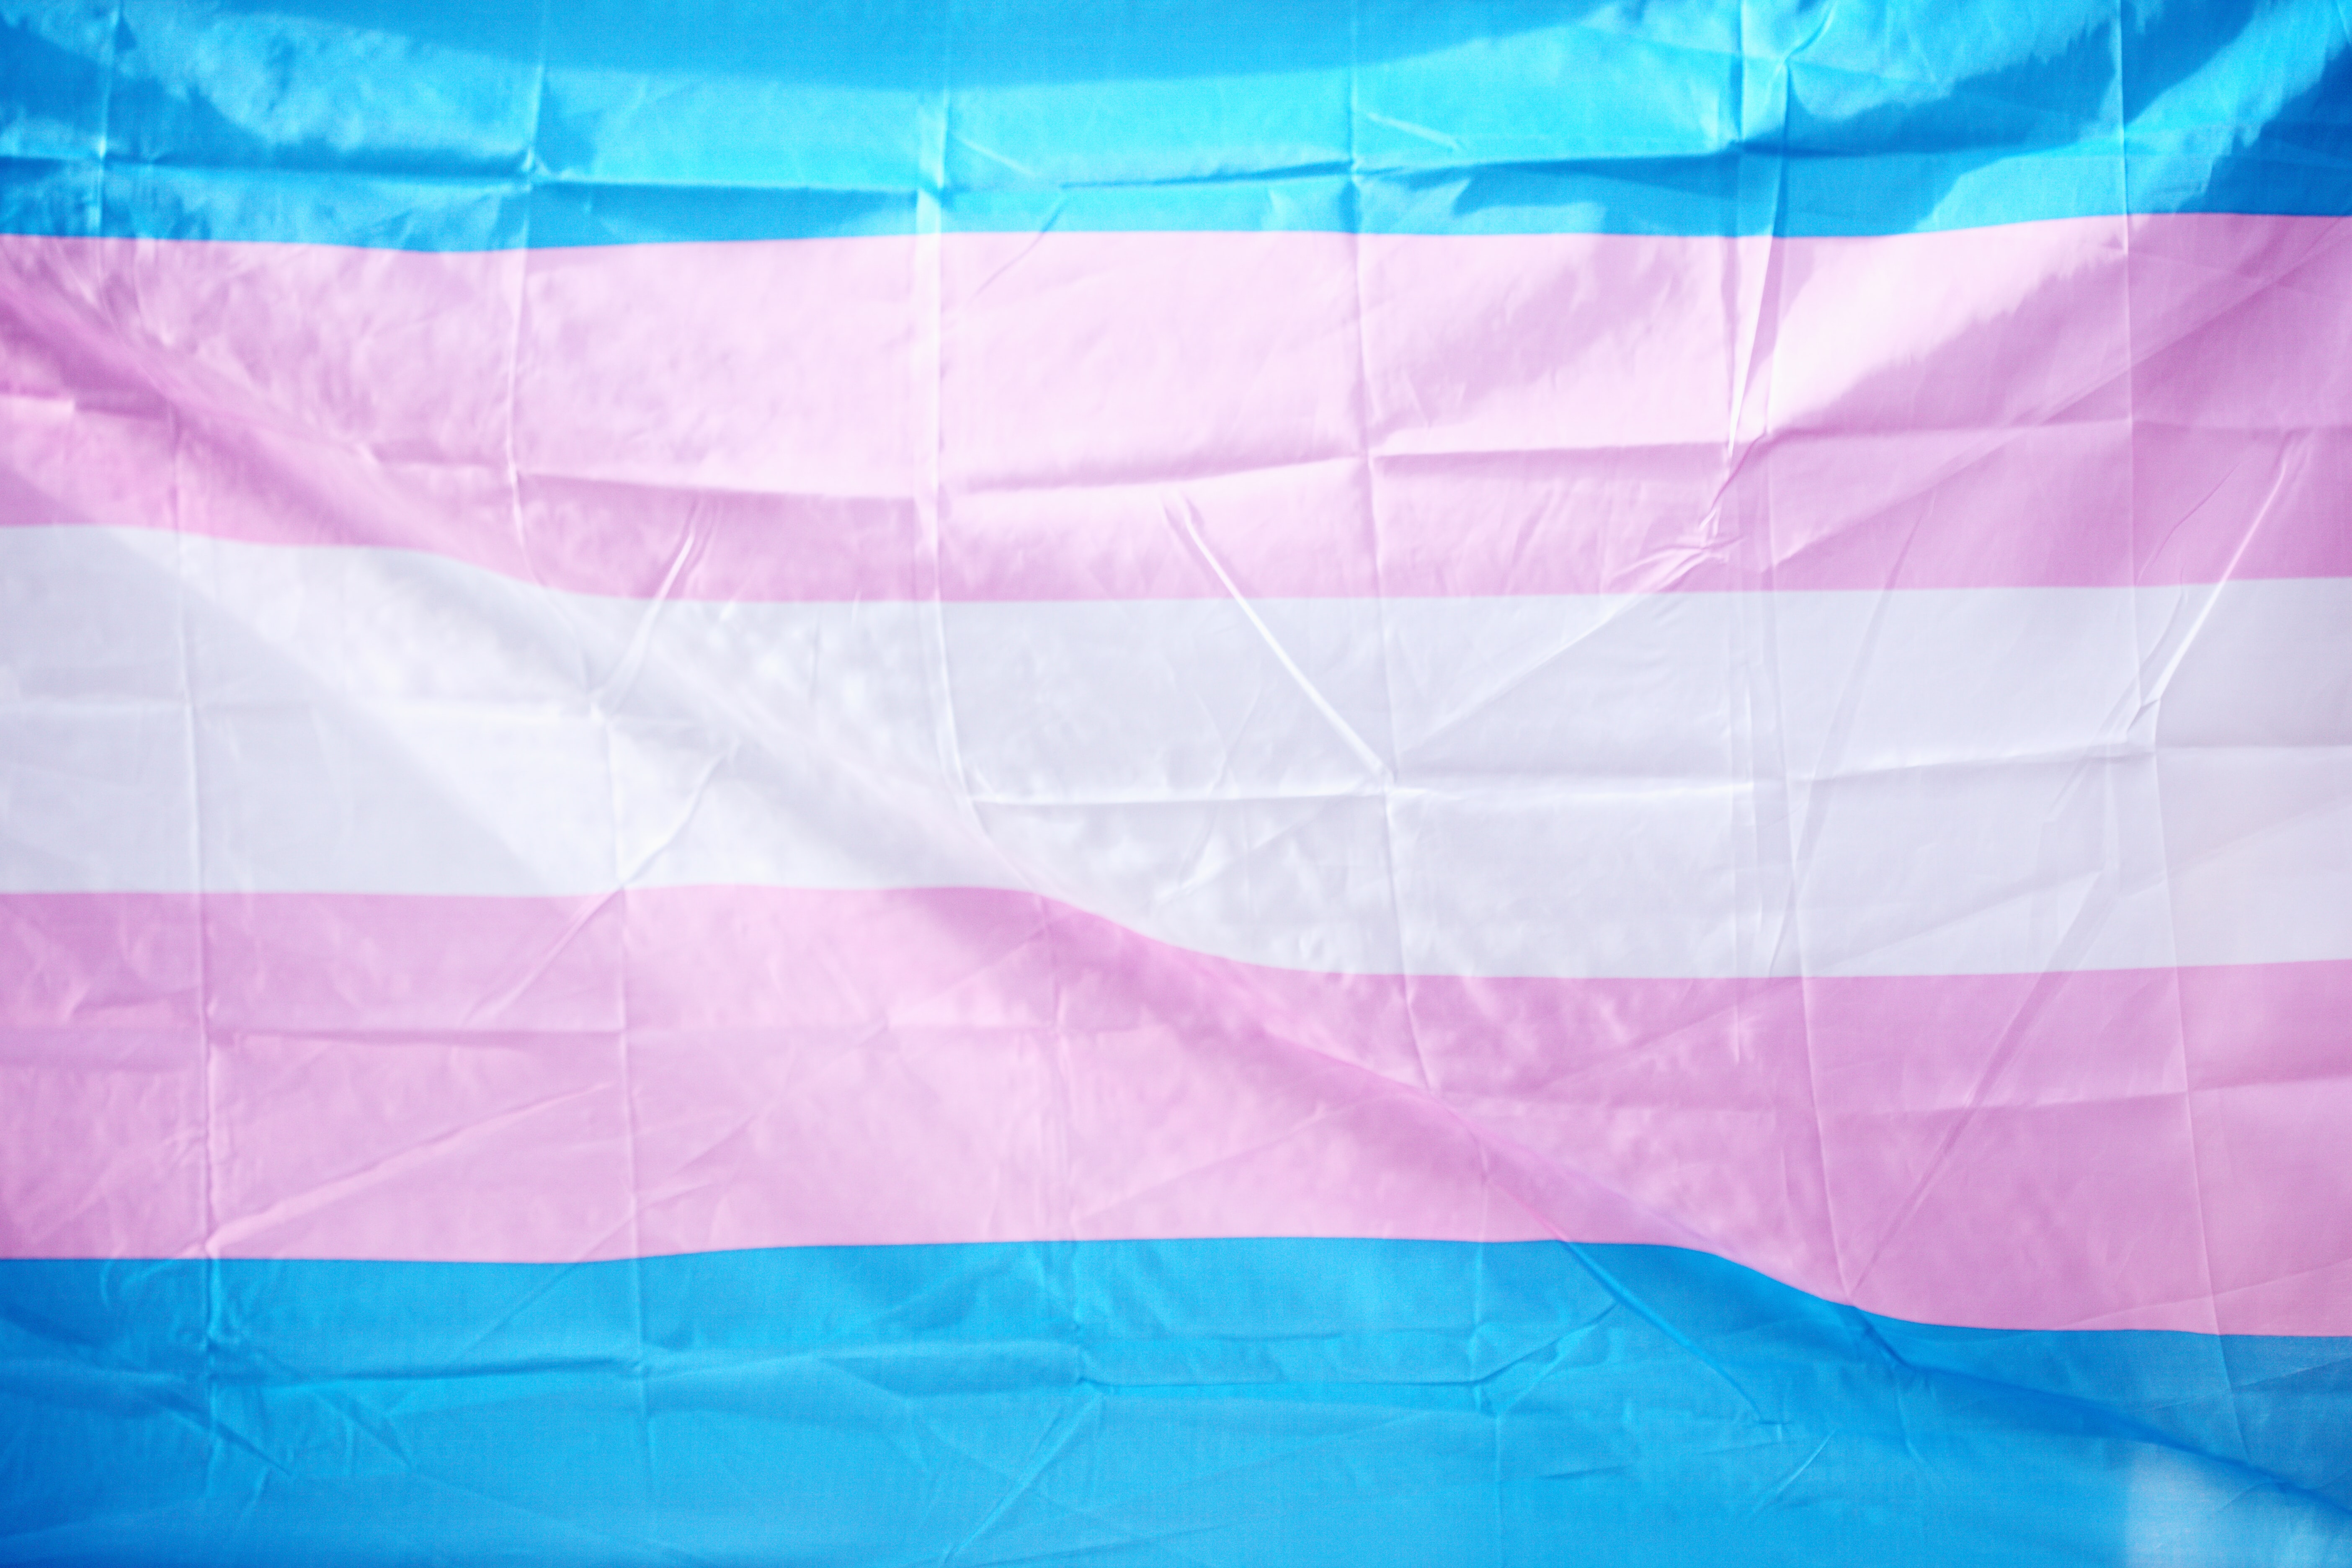 Keshet Transgender Inclusion Image